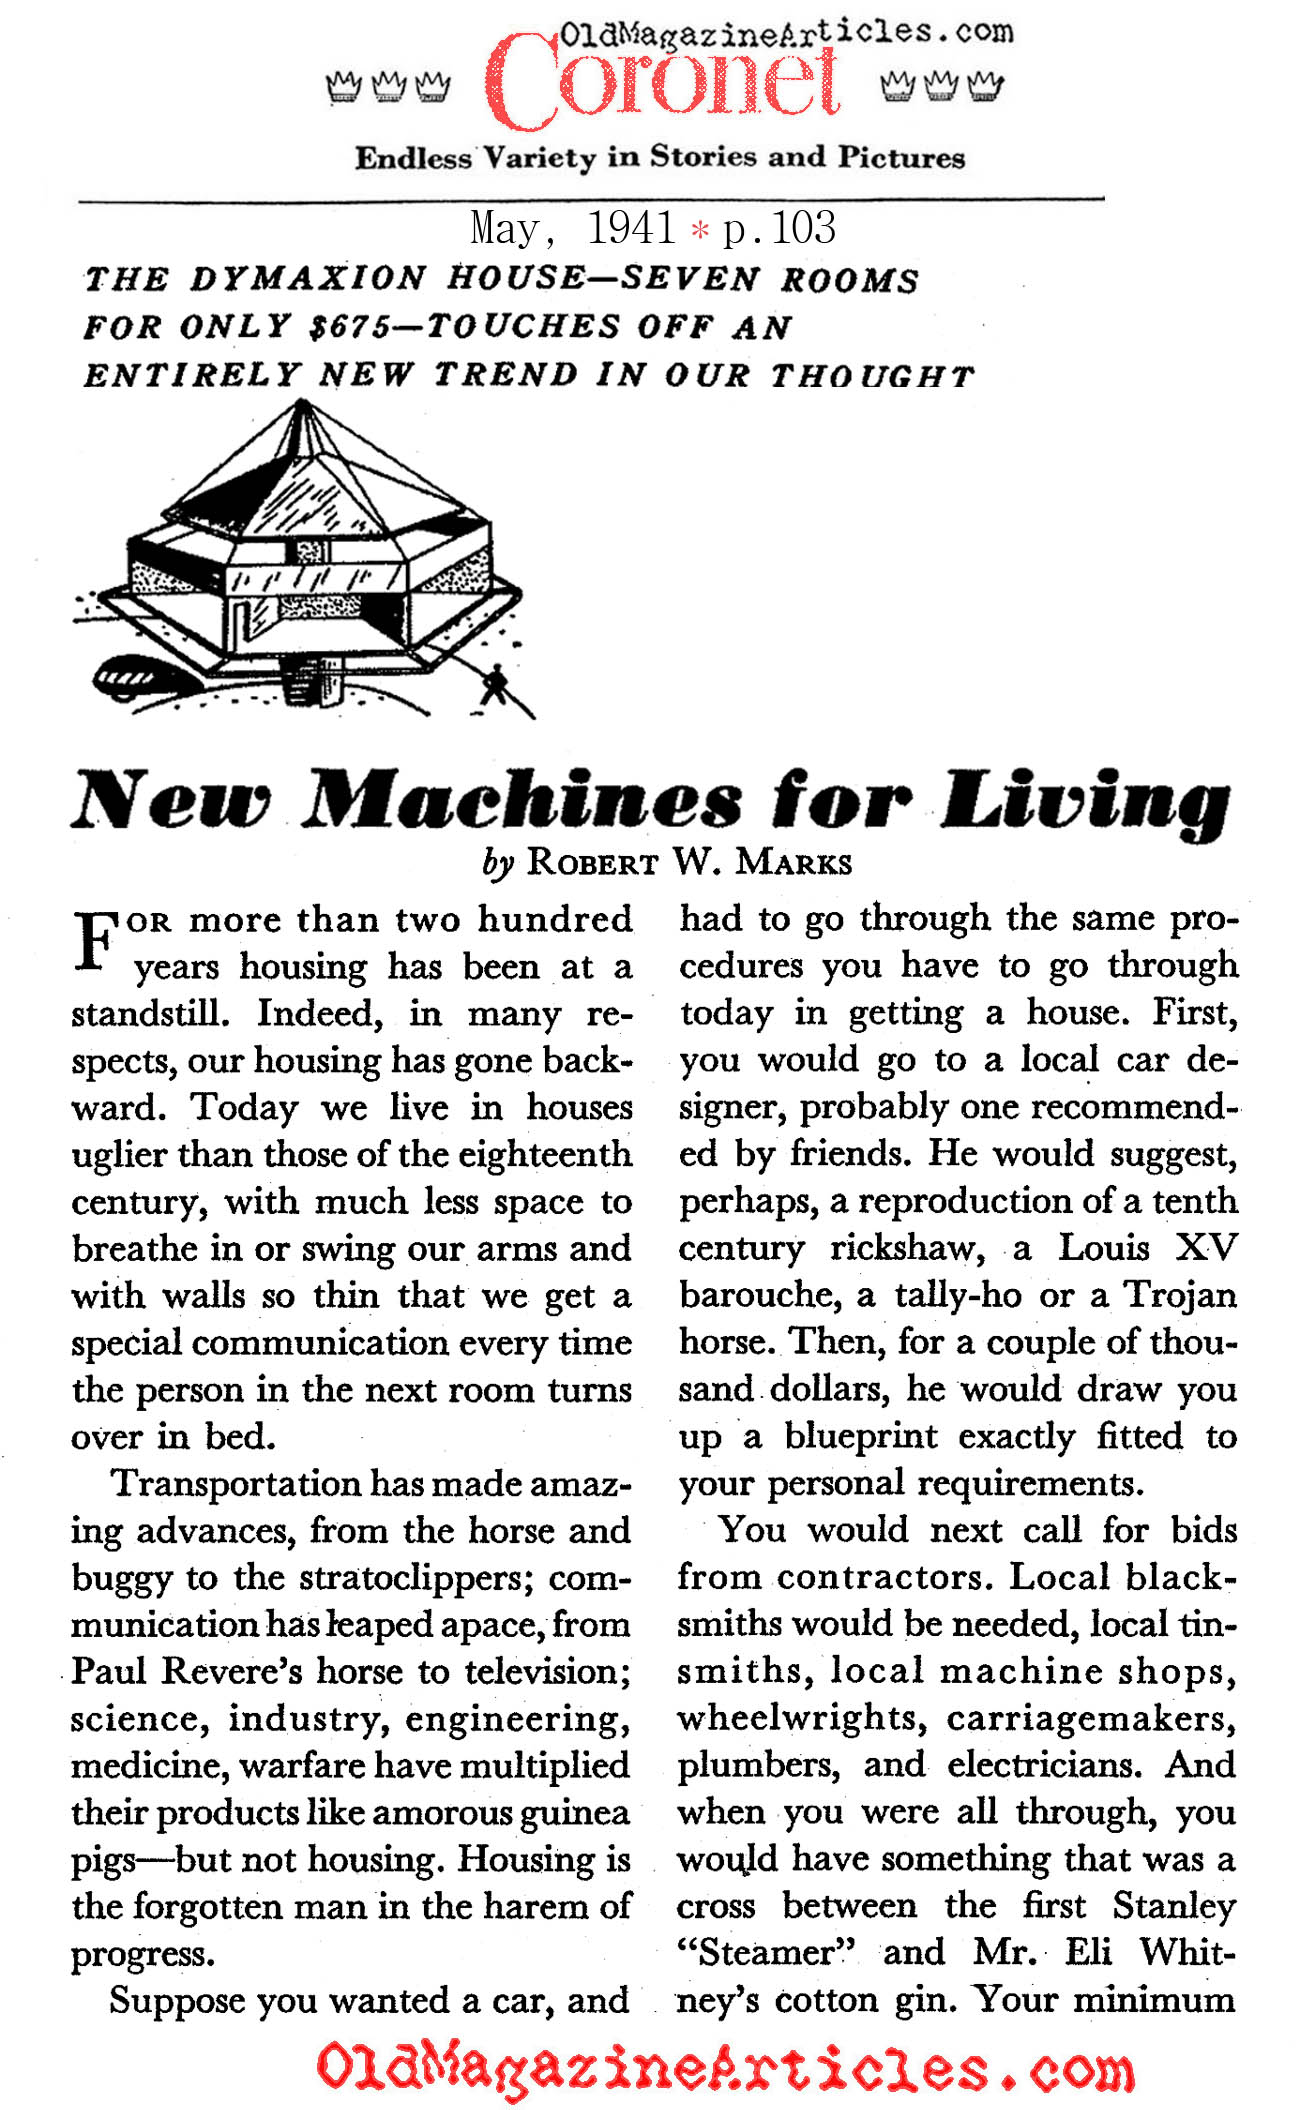 The Thinking of Buckminster Fuller (Coronet Magazine, 1941)